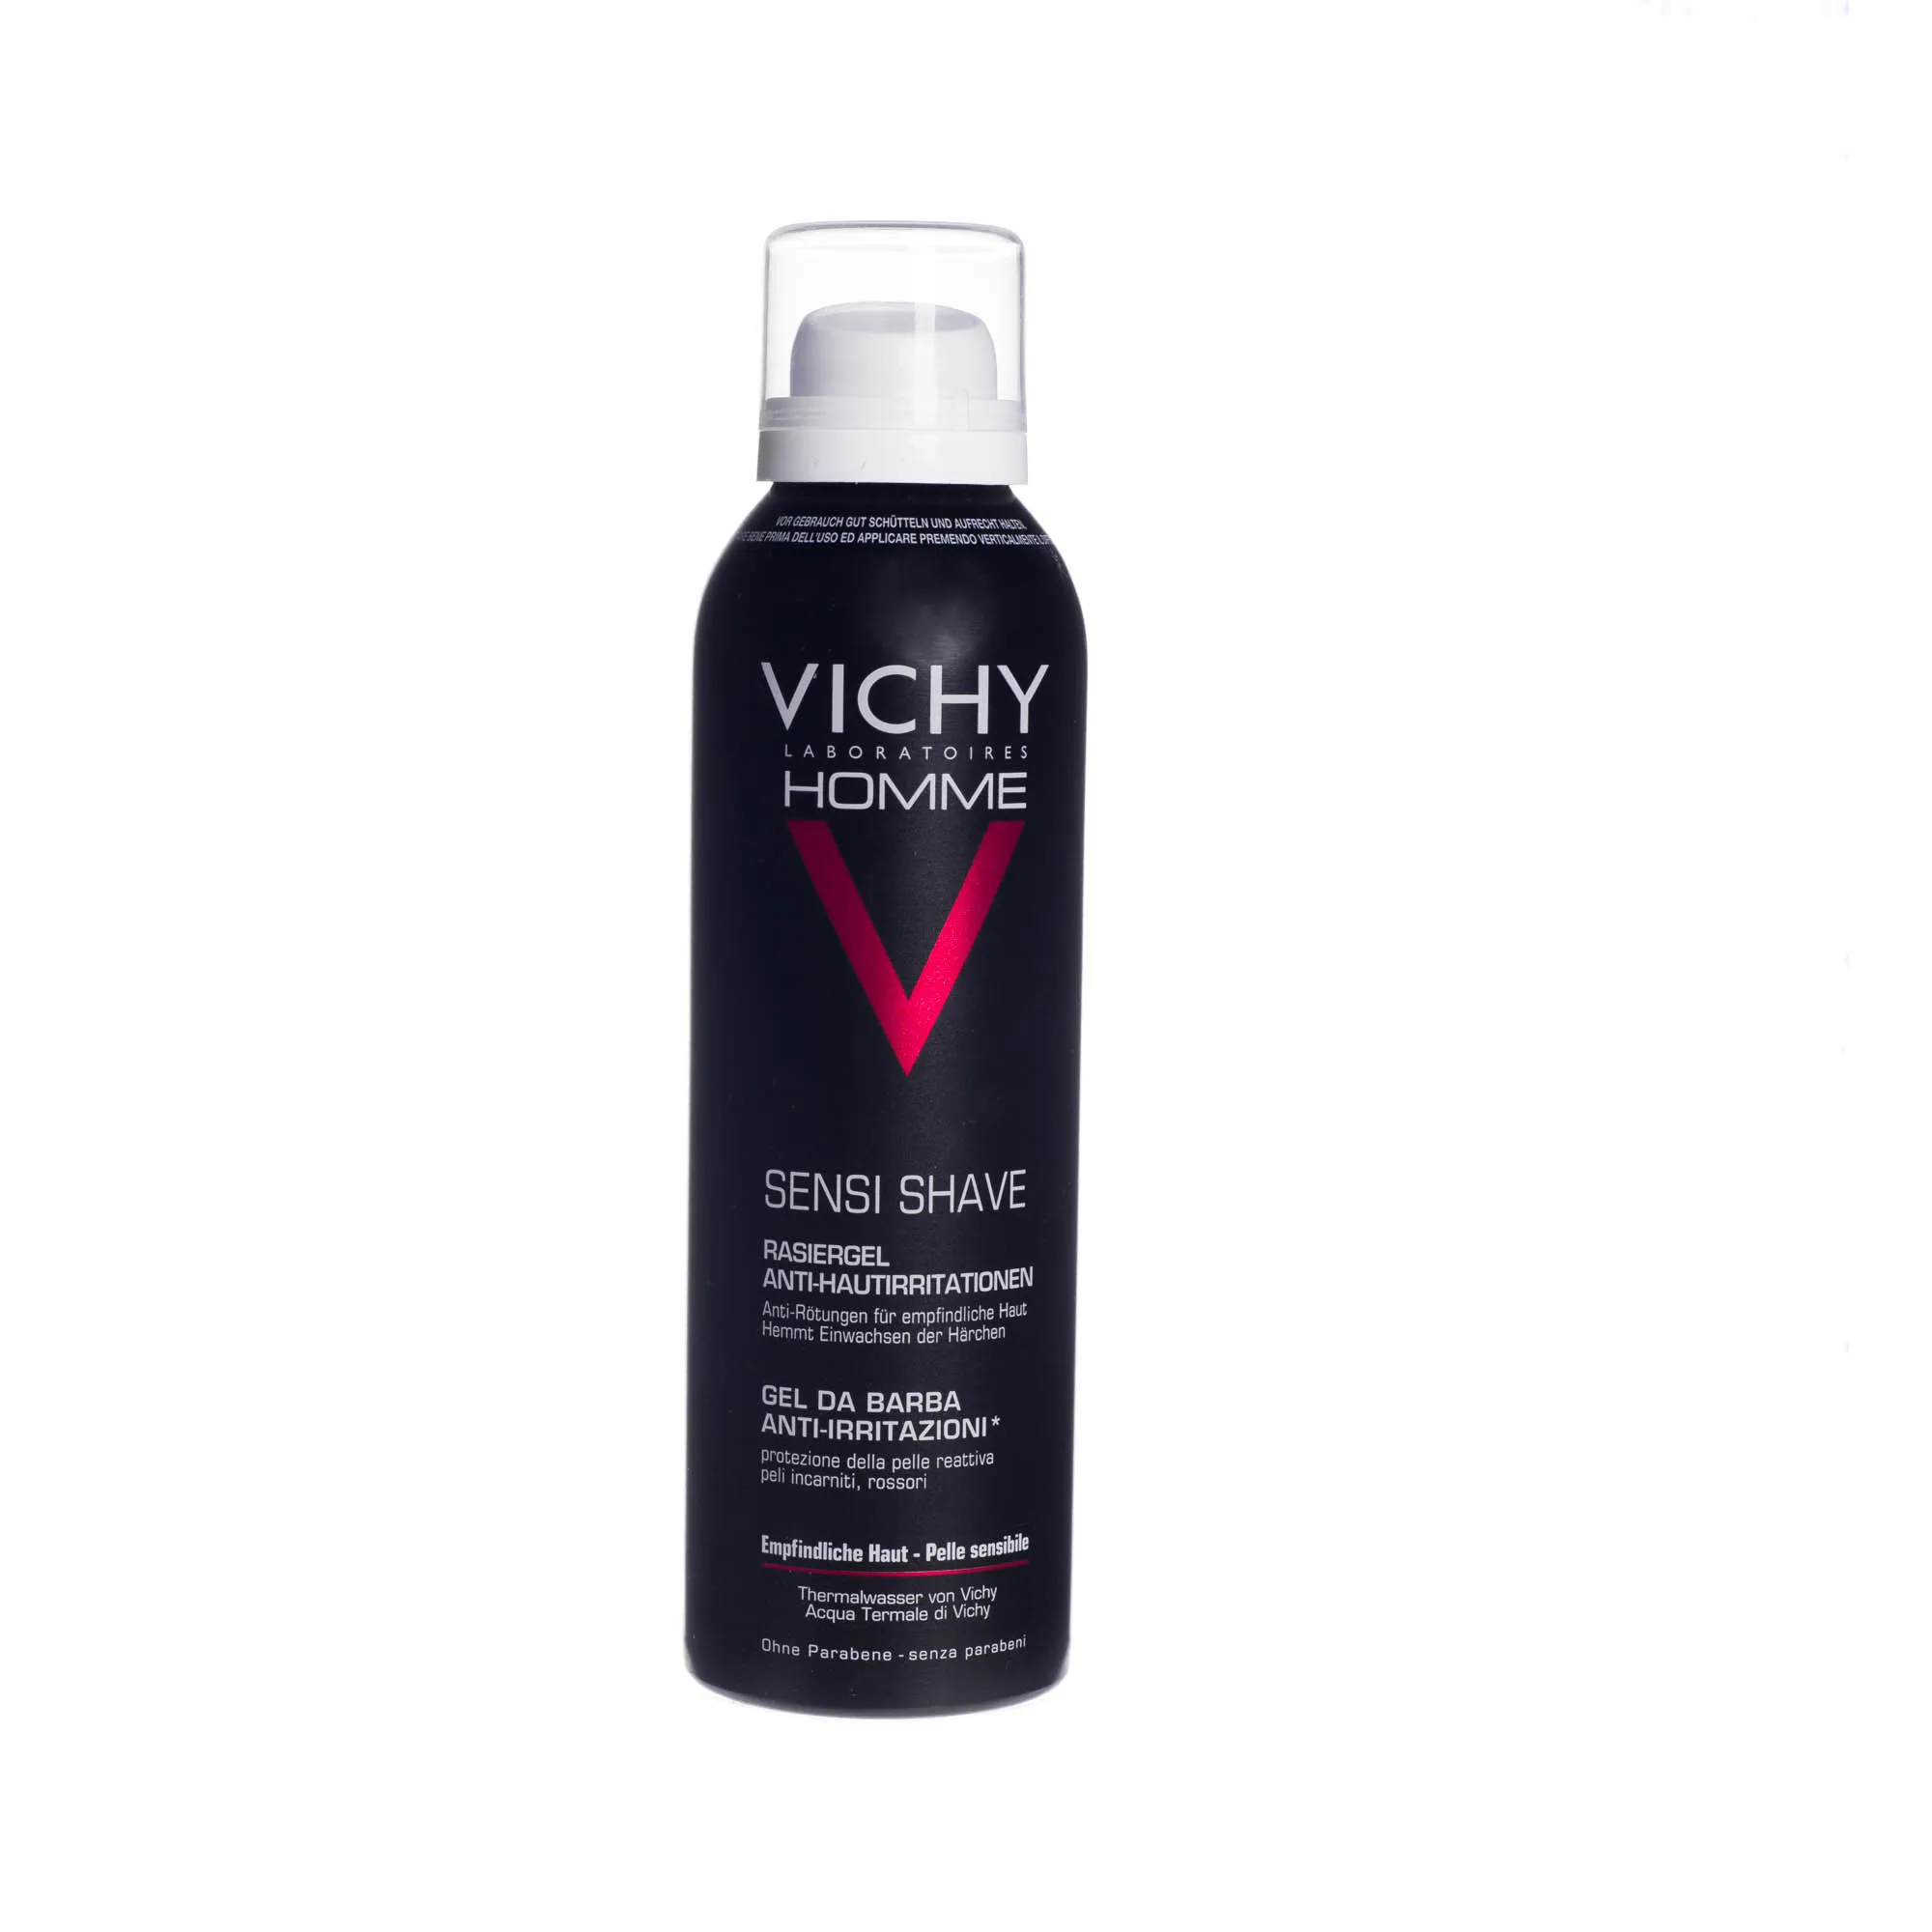 Vichy Homme Sensi Shave żel do golenia przeciw podrażnieniom do skóry wrażliwej 150 ml 